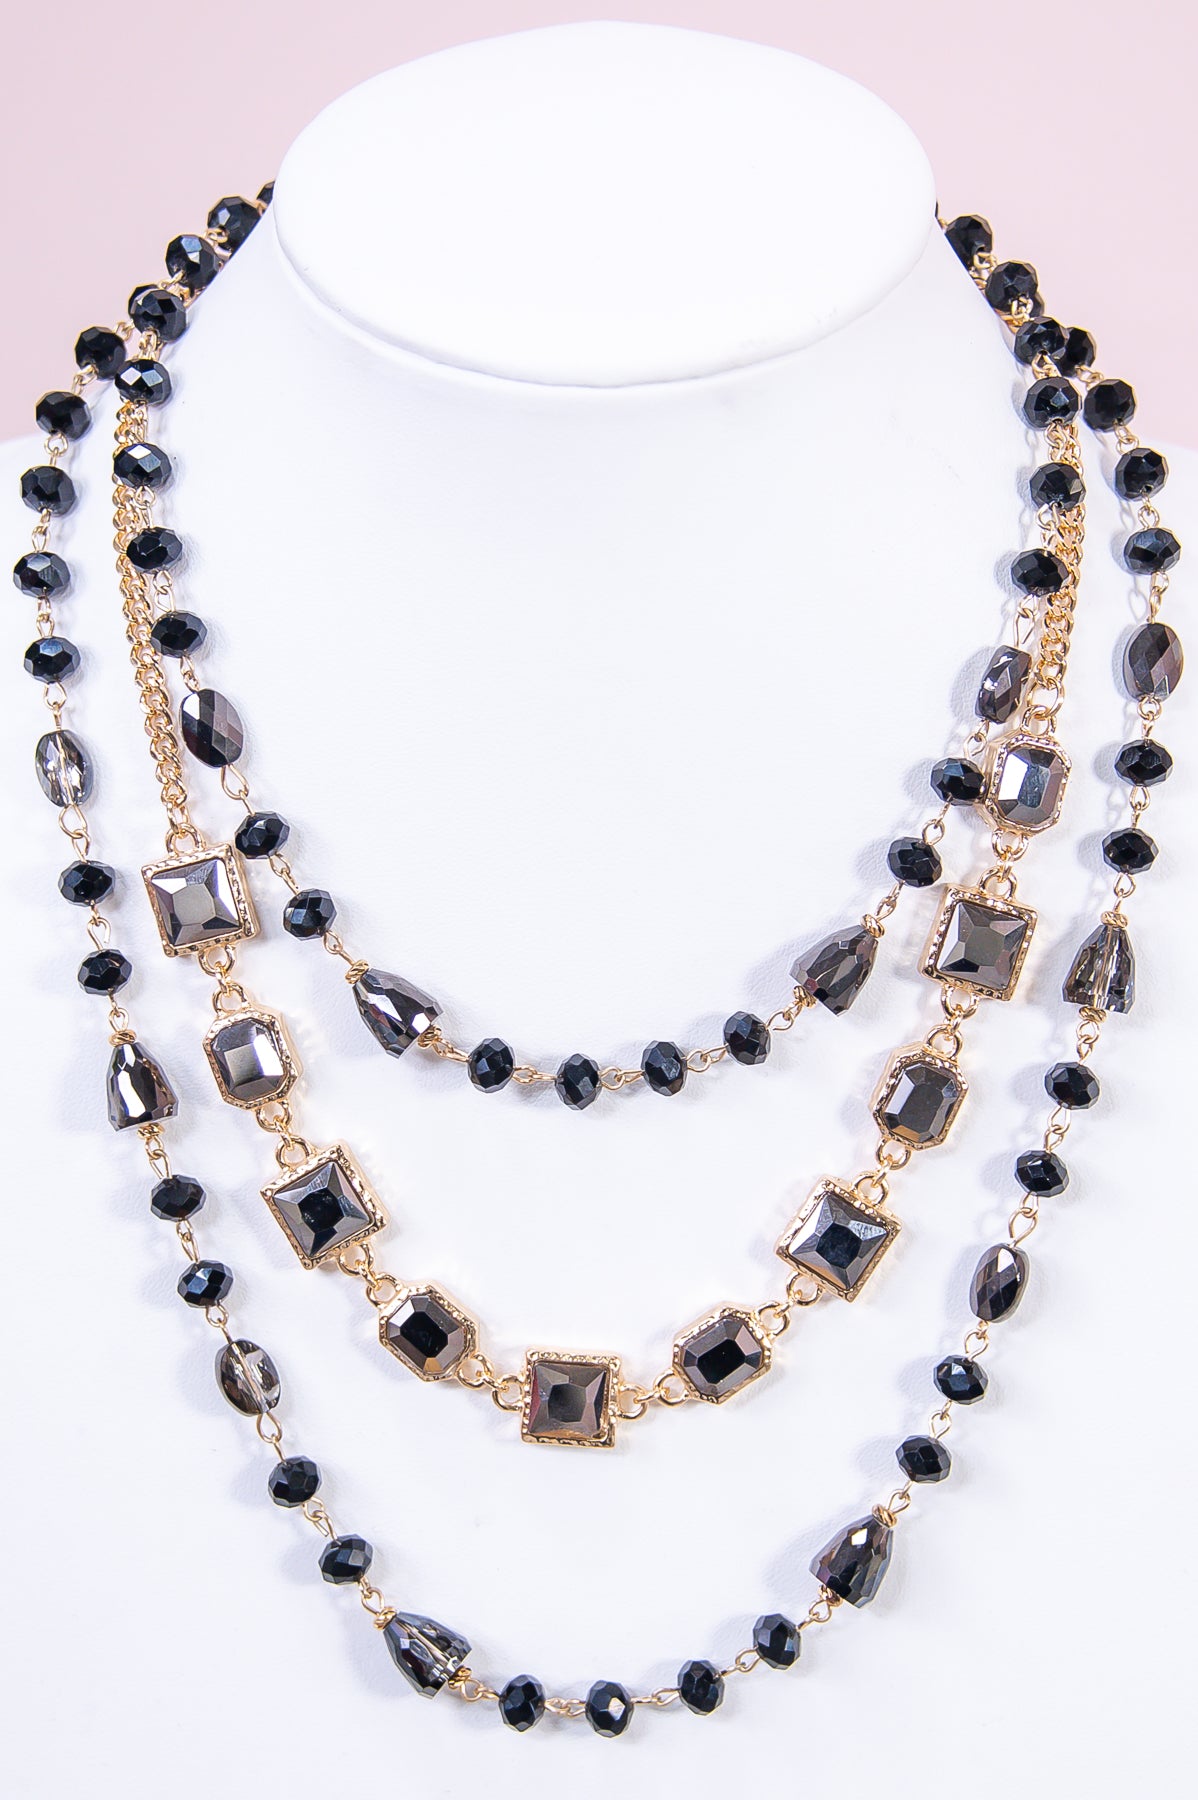 Black/Gold Beaded/Bling Layered Necklace - NEK4324BK